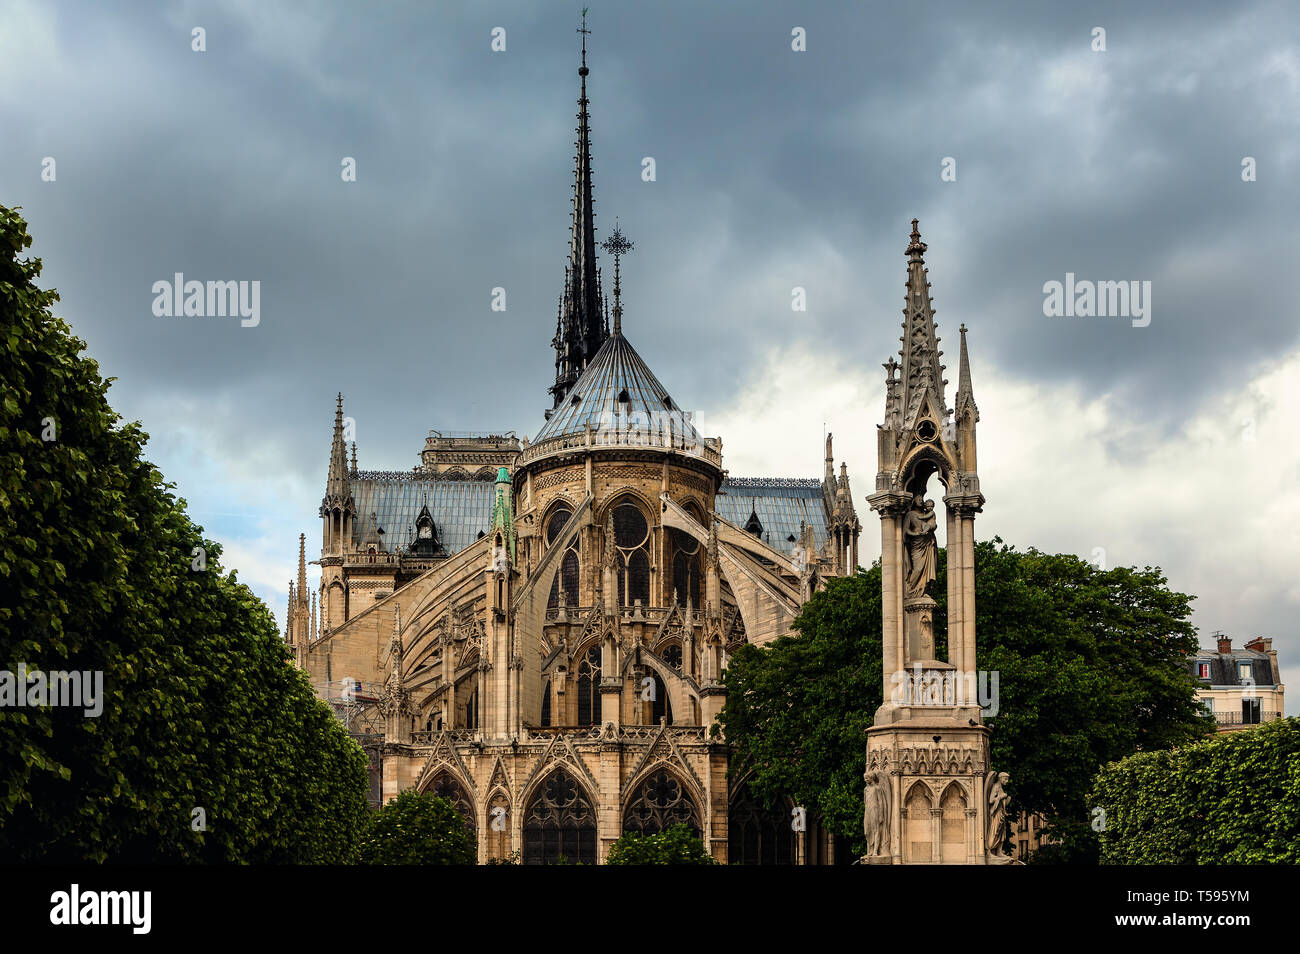 Vue de la cathédrale Notre-Dame de Paris dans le cadre de ciel nuageux. Banque D'Images